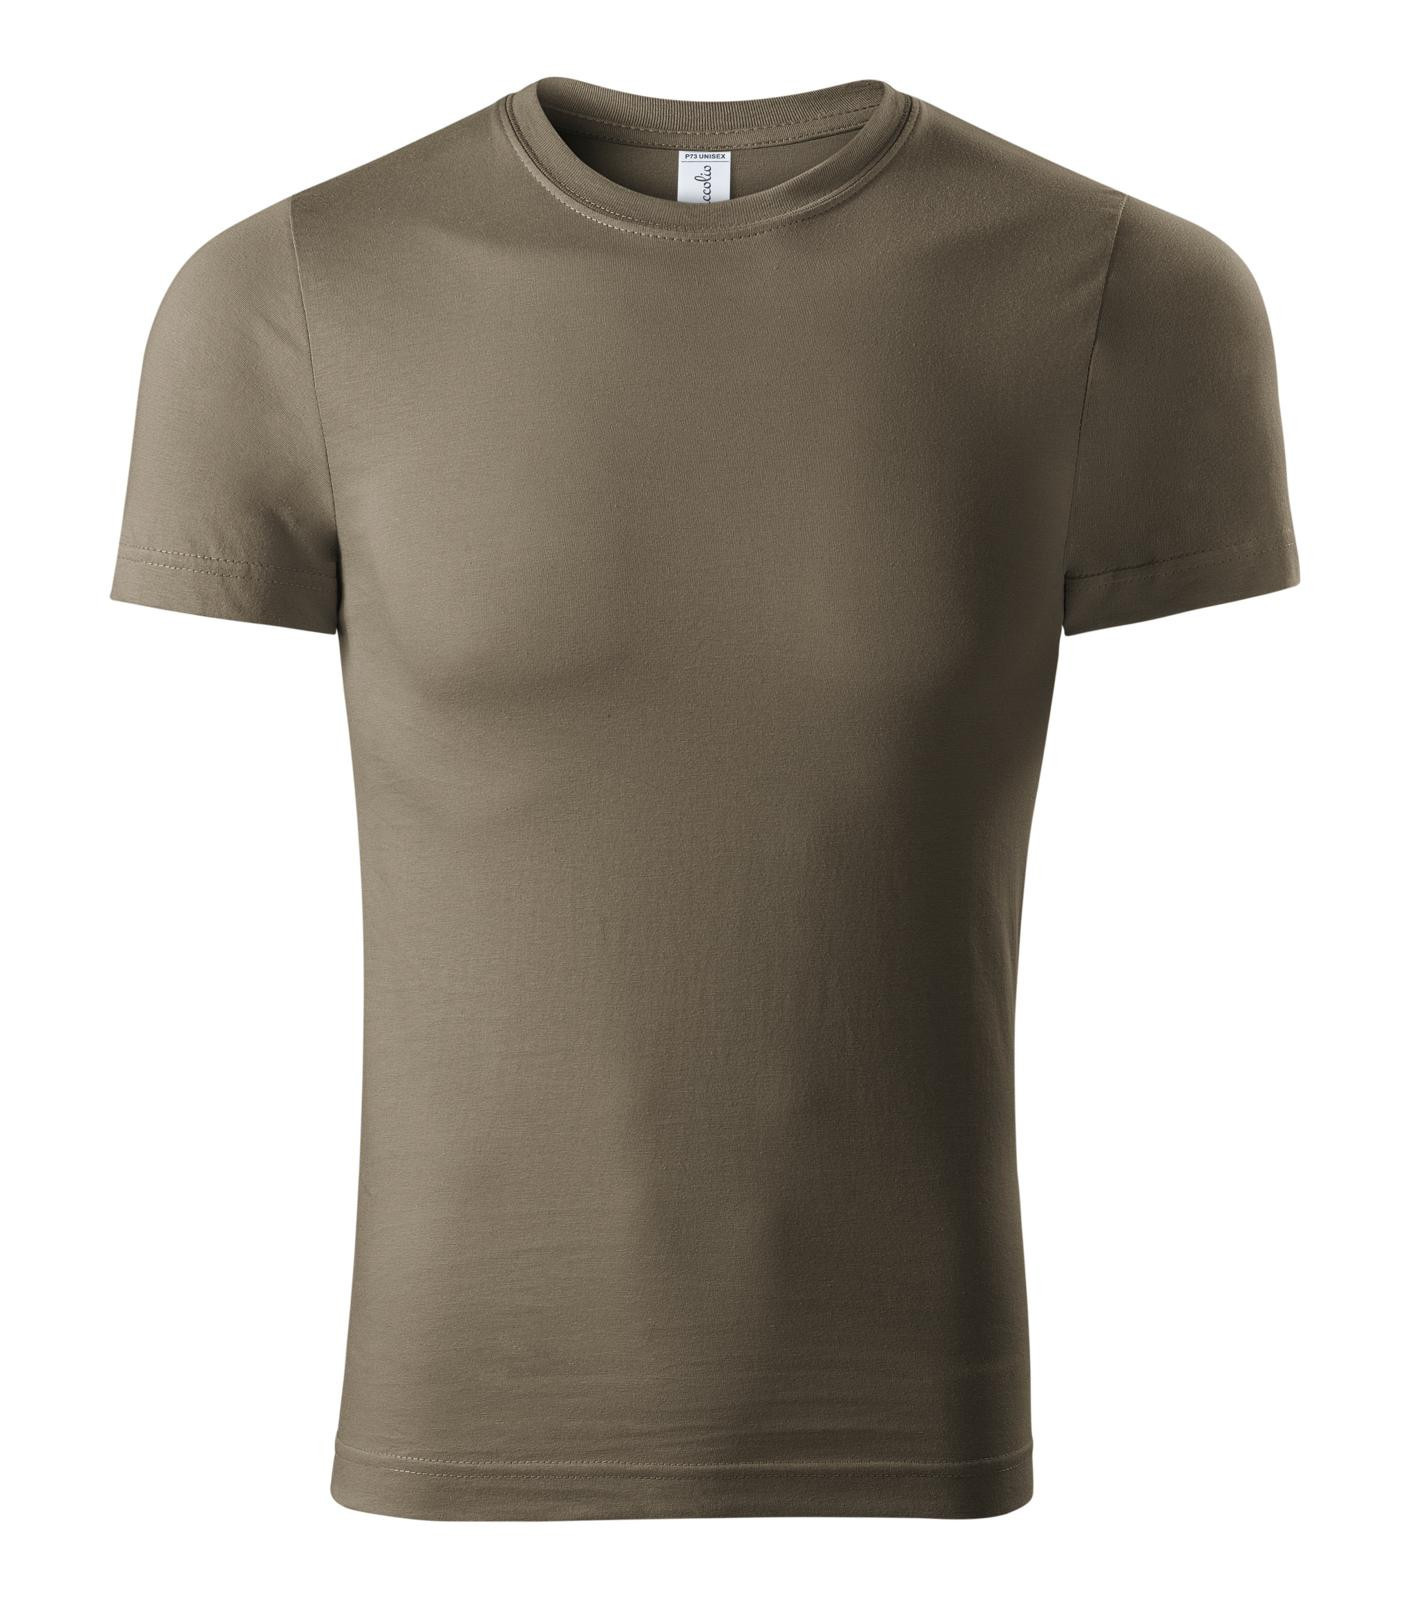 Unisex tričko Piccolio Paint P73 - veľkosť: XS, farba: army